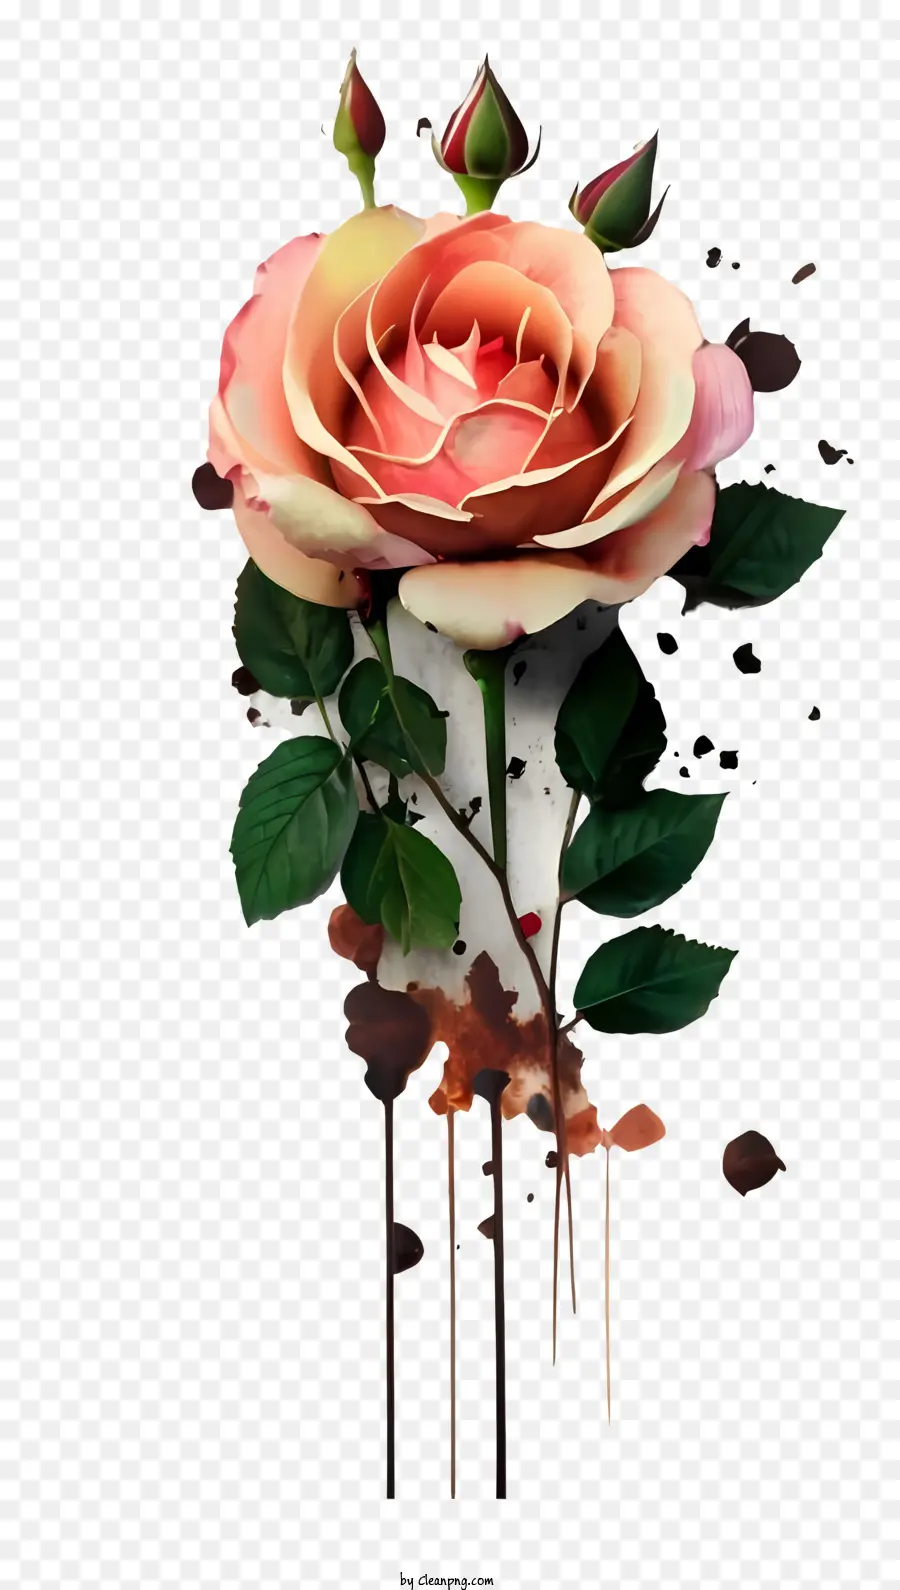 khung màu trắng - Mở hoa hồng với những cánh hoa hồng và nâu được bao quanh bởi nước, đóng khung bởi màu đen và trắng